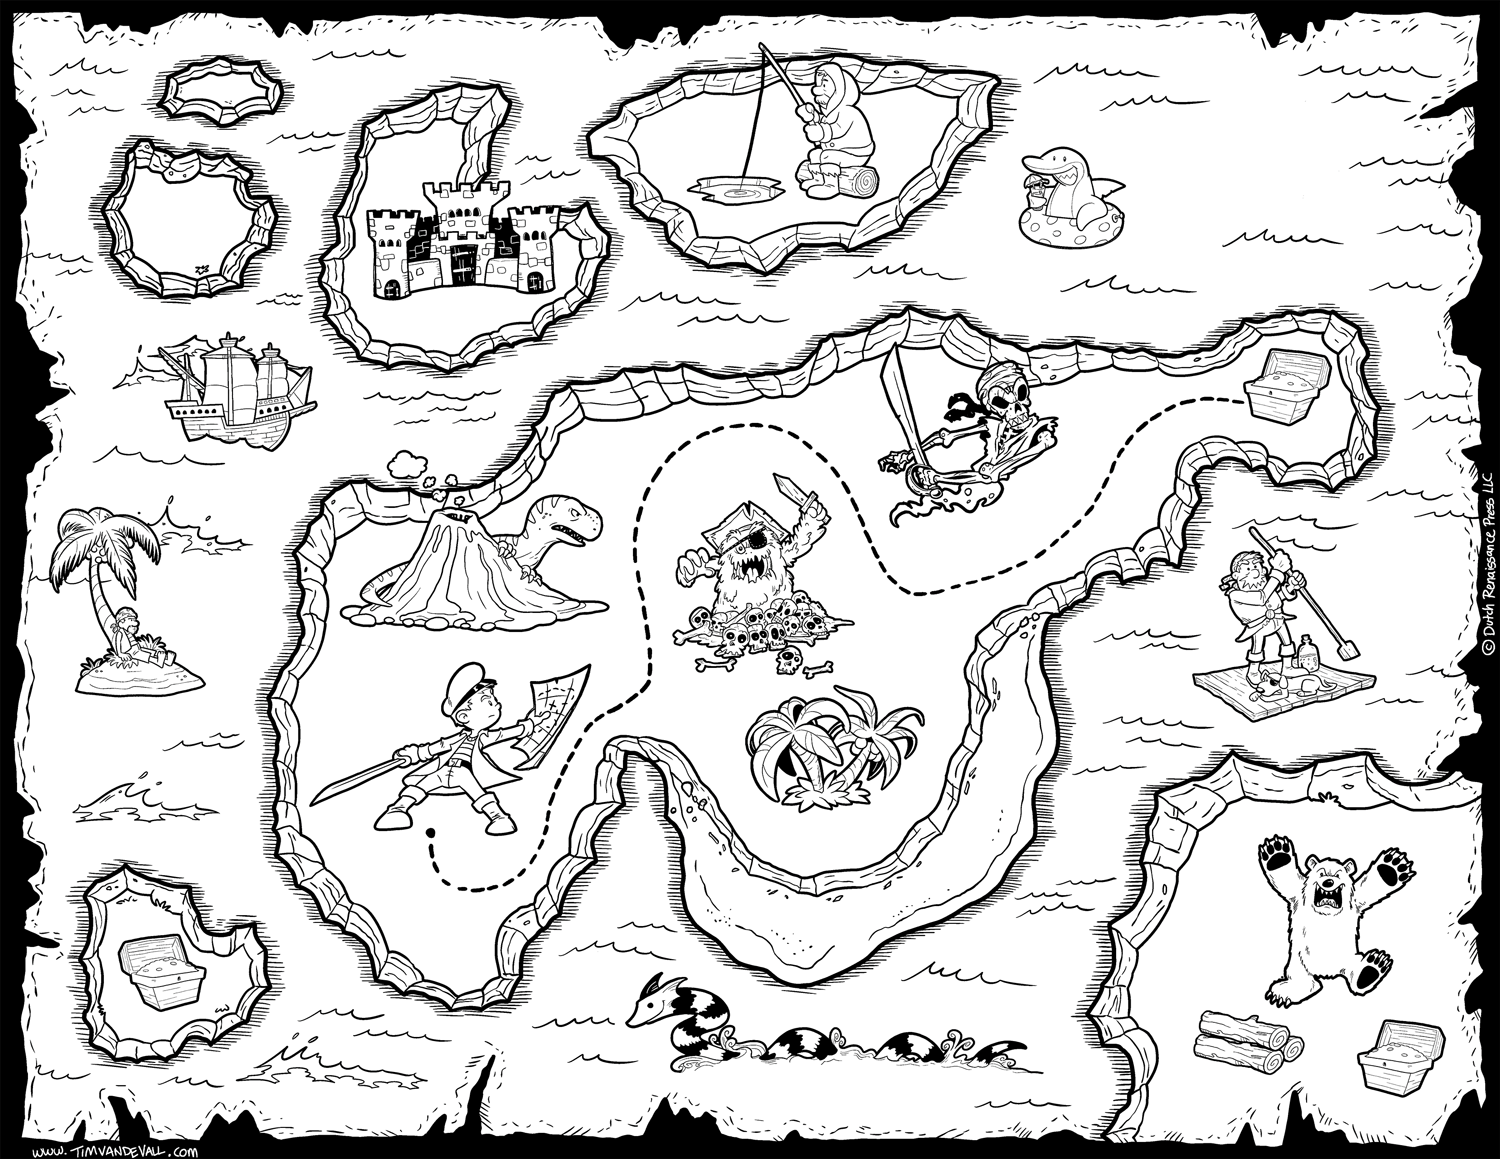 Раскраска Карта сокровищ, скачать и распечатать раскраску раздела Пираты